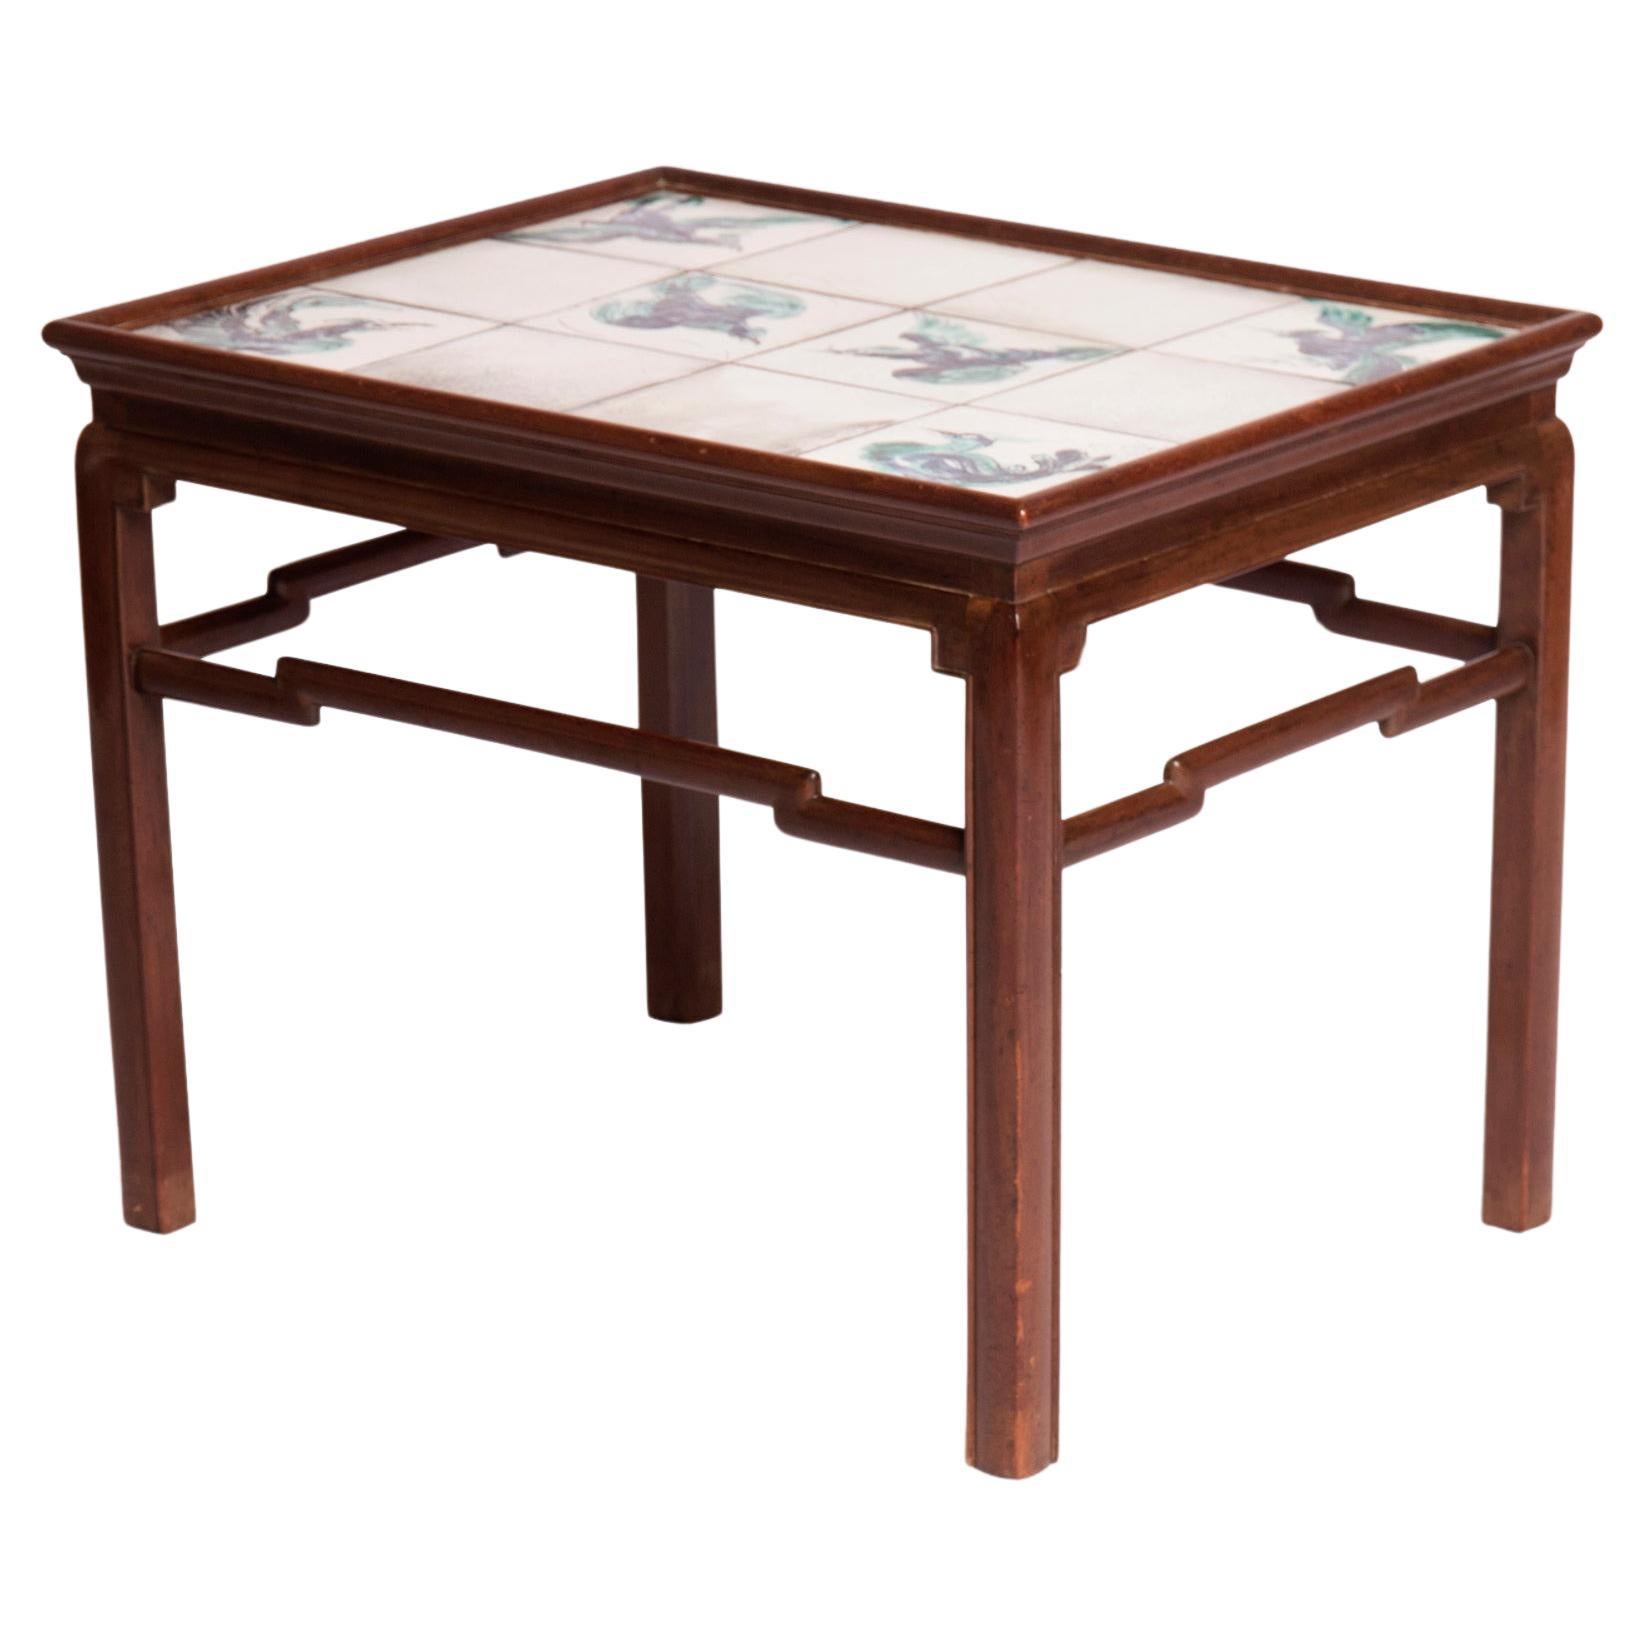 Table basse d'inspiration chinoise en acajou avec carreaux aux nuances blanches, vertes et bleues en vente